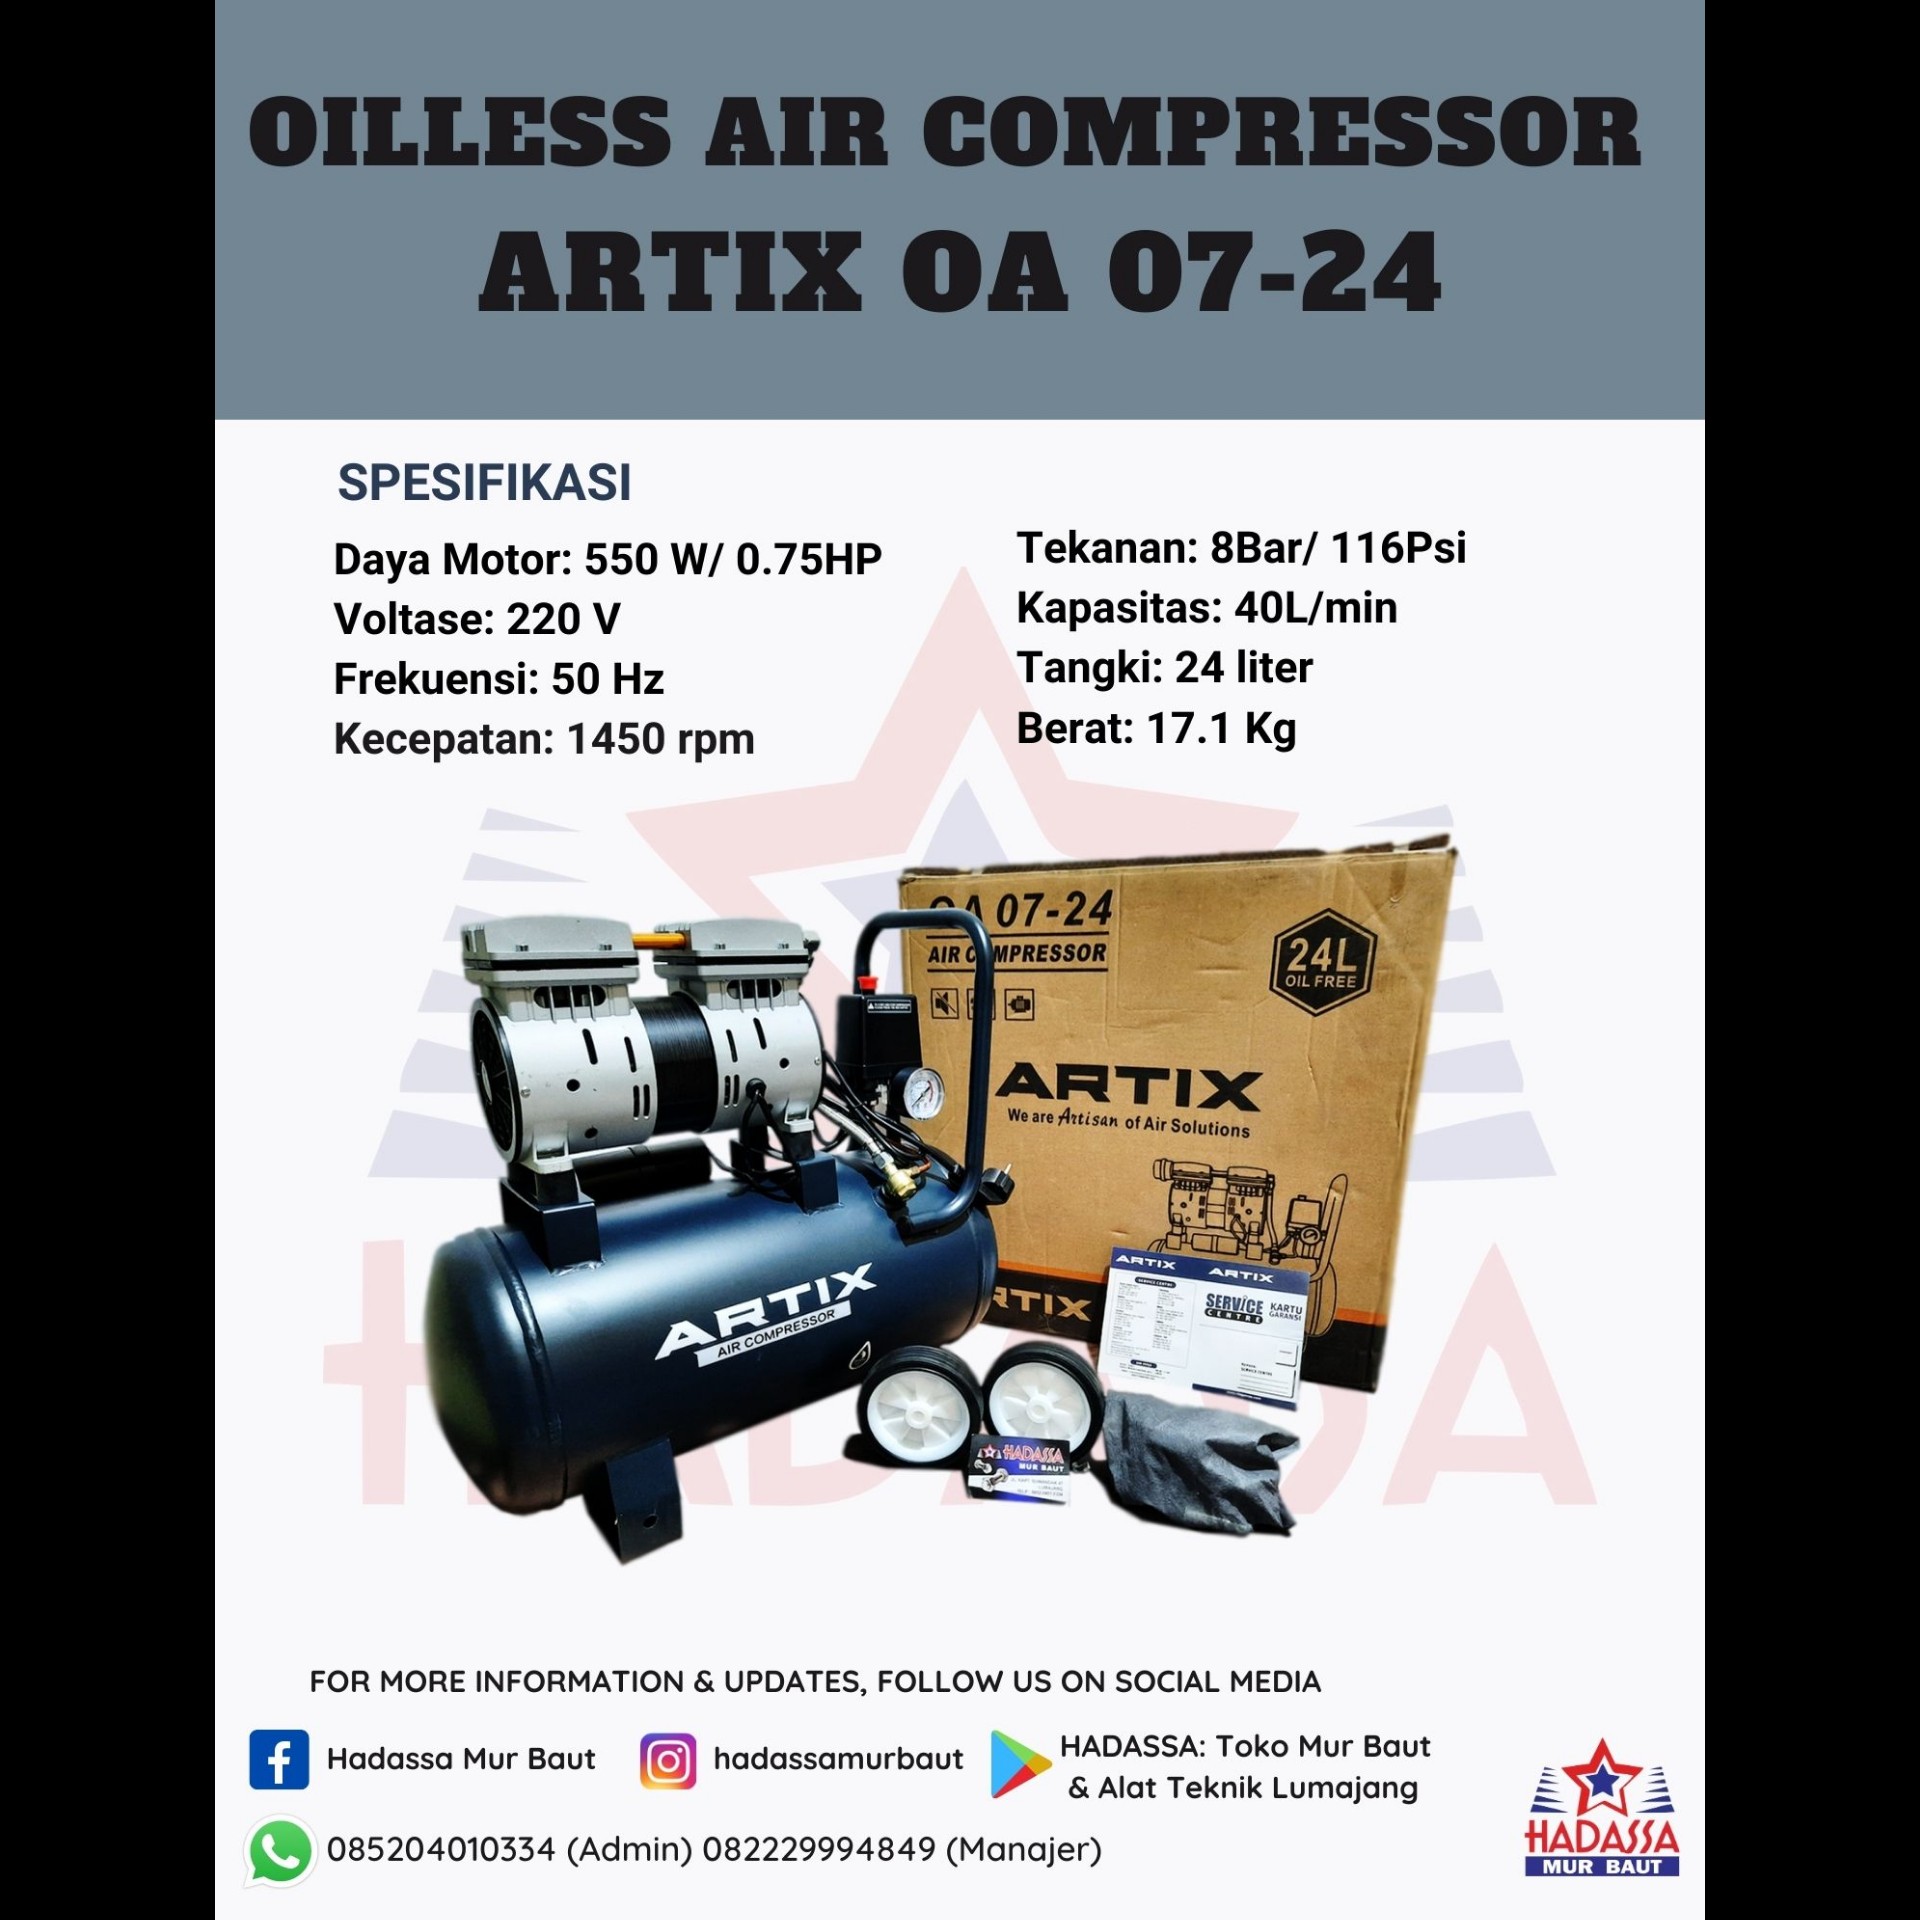 Oilless Air Compressor Artix OA 07-24